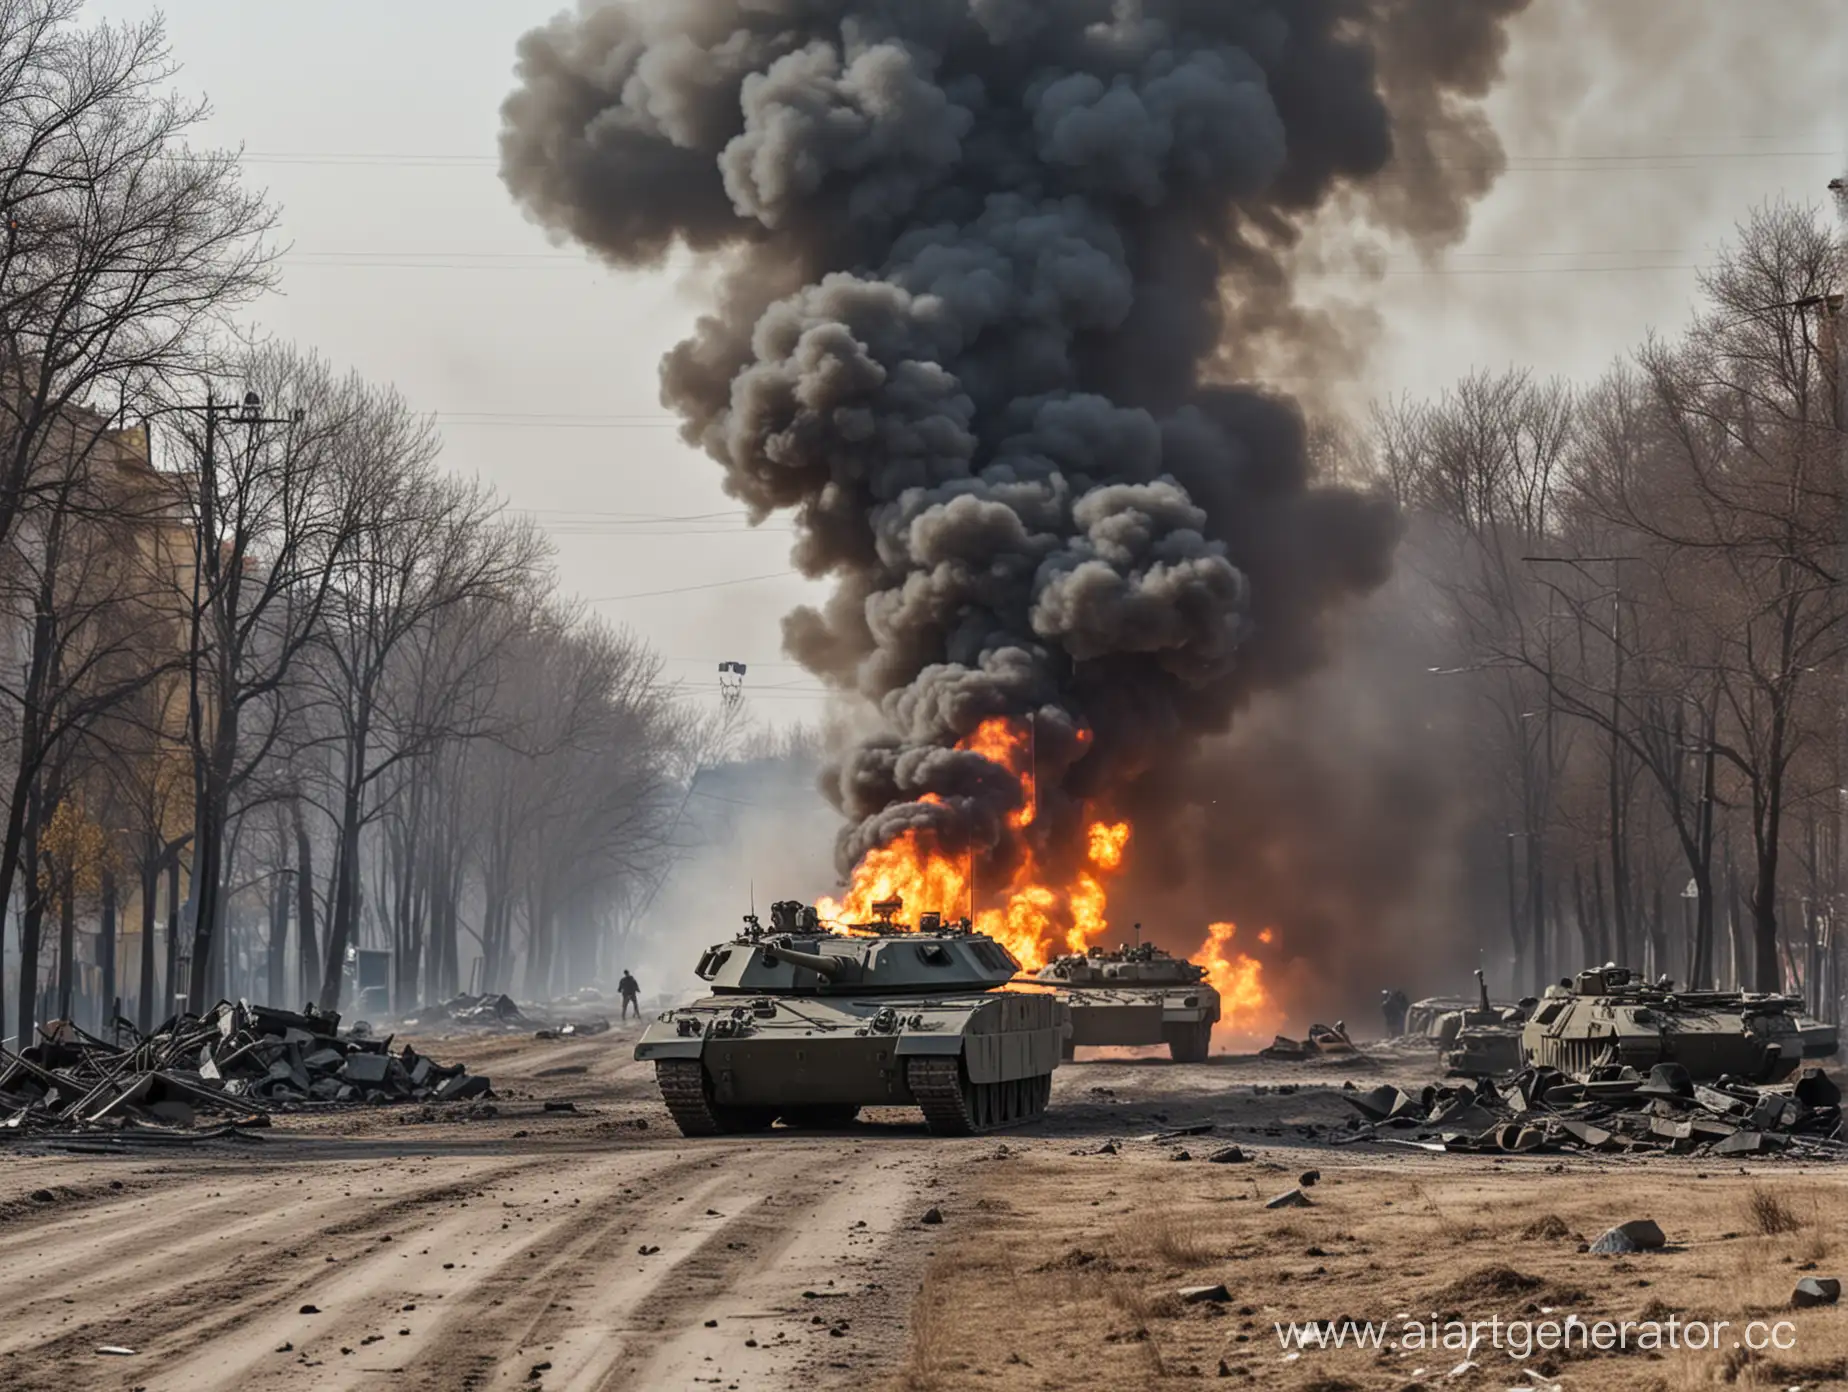 Война на украине , бронетранспортёры и танки ведут бой вертолёты летают и истребитили бомбят всё,жестокие бои в городе,артлерия повсюду бьёт